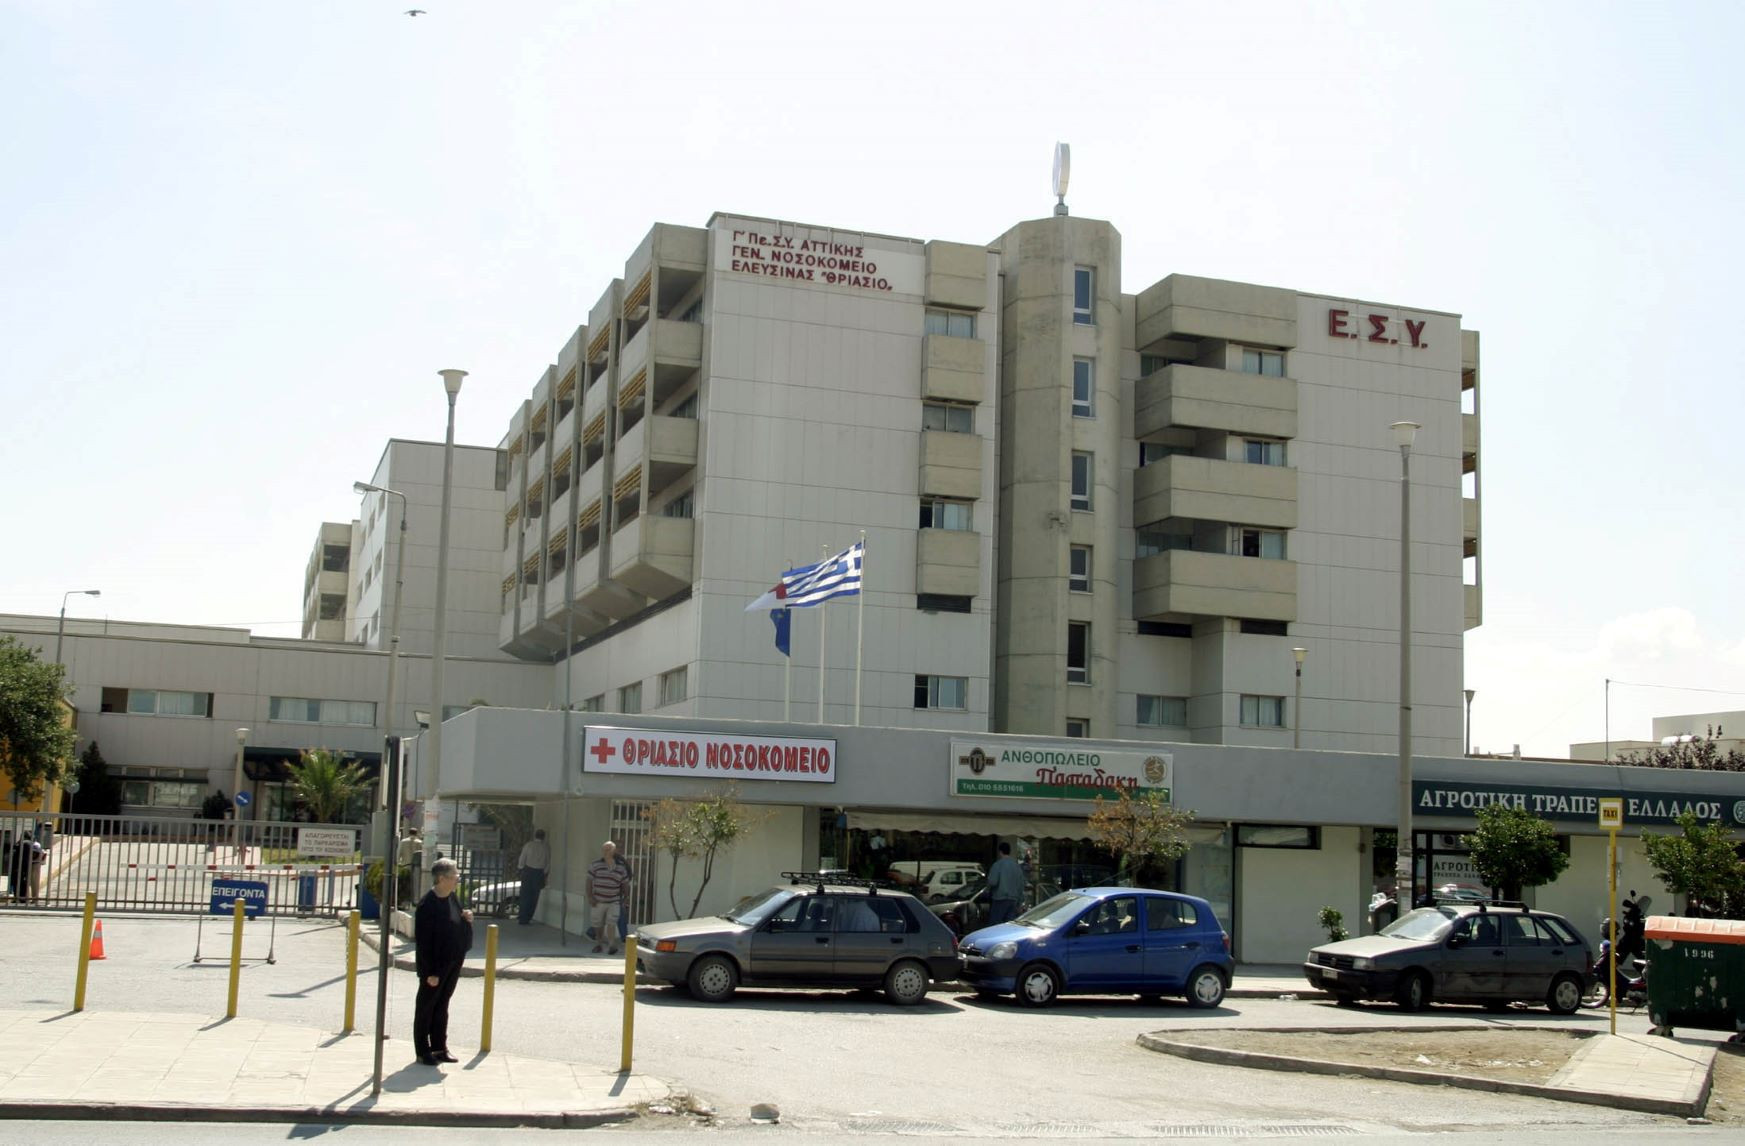 Εργαζόμενοι στο Θριάσιο Νοσοκομείο: «Κυβέρνηση και διοίκηση ανοίγουν νέα ΜΕΘ χωρίς εξοπλισμό και προσωπικό»